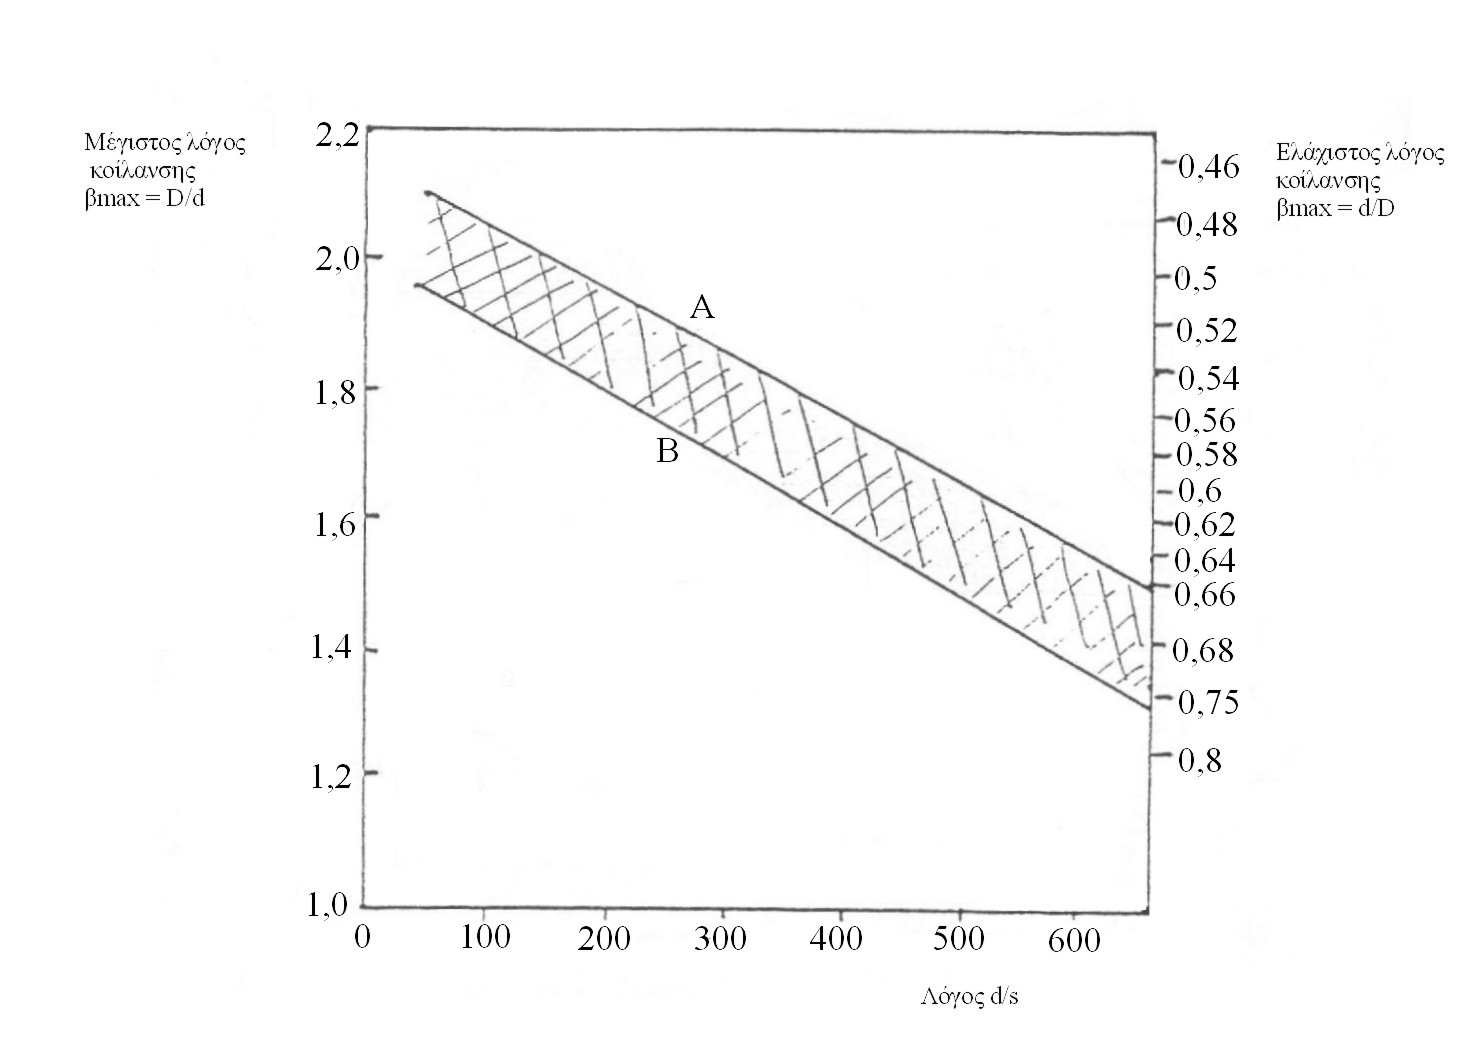 Κατασκευαστικές Τεχνολογίες 176 Α : Υλικό ιδανικό για βαθεία κοίλανση, Β : Απλό υλικό βαθείας κοίλανσης. Διάγραμμα 4: Μέγιστος και ελάχιστος λόγος κοίλανσης κυλινδρικών αντικειμένων σε μια φάση.